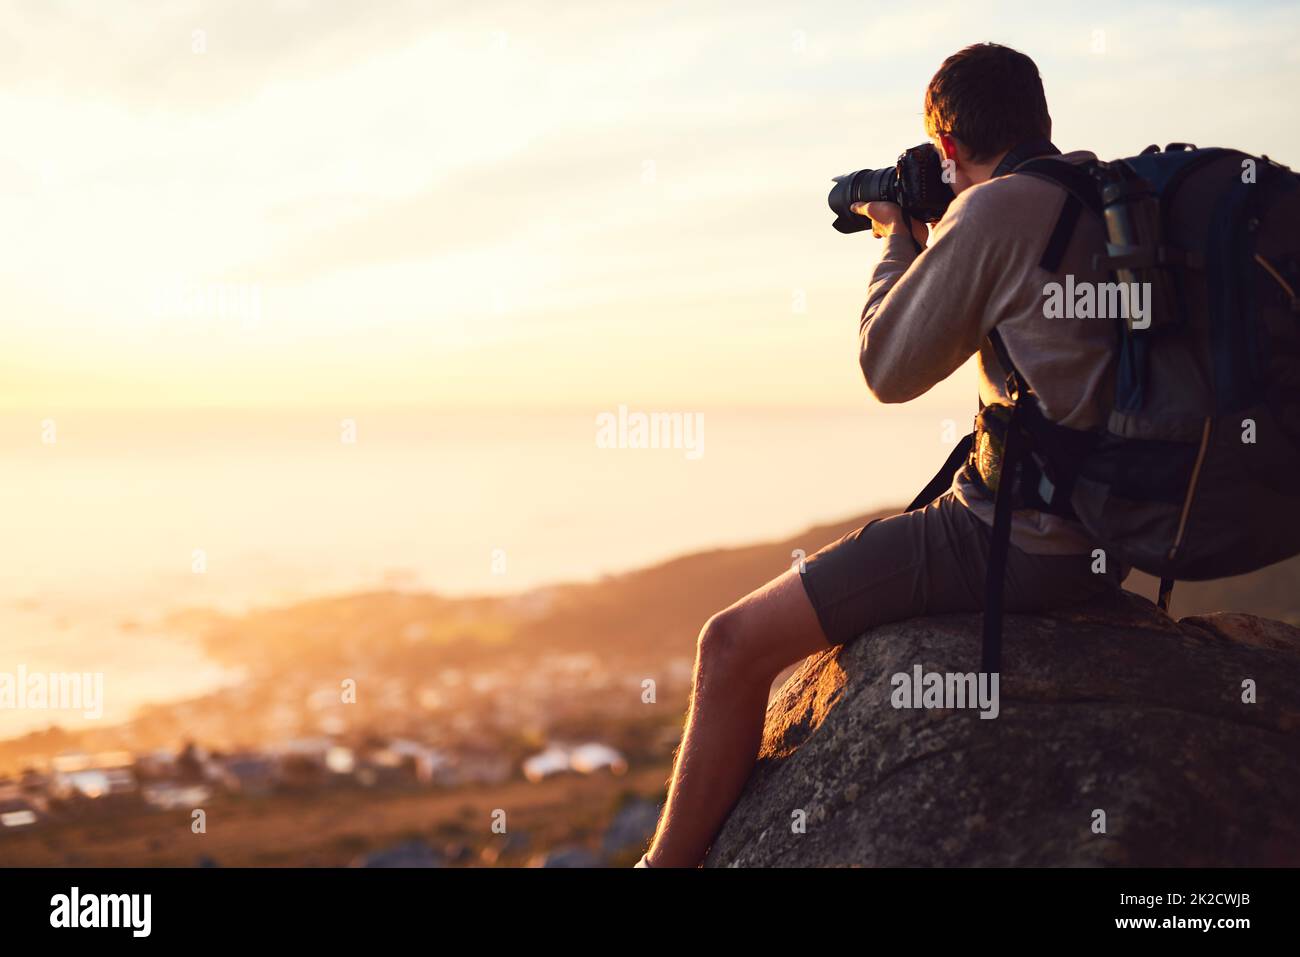 Faites de la randonnée plus, plus de soucis. Photo d'un jeune photographe prenant une photo du sommet d'une montagne. Banque D'Images